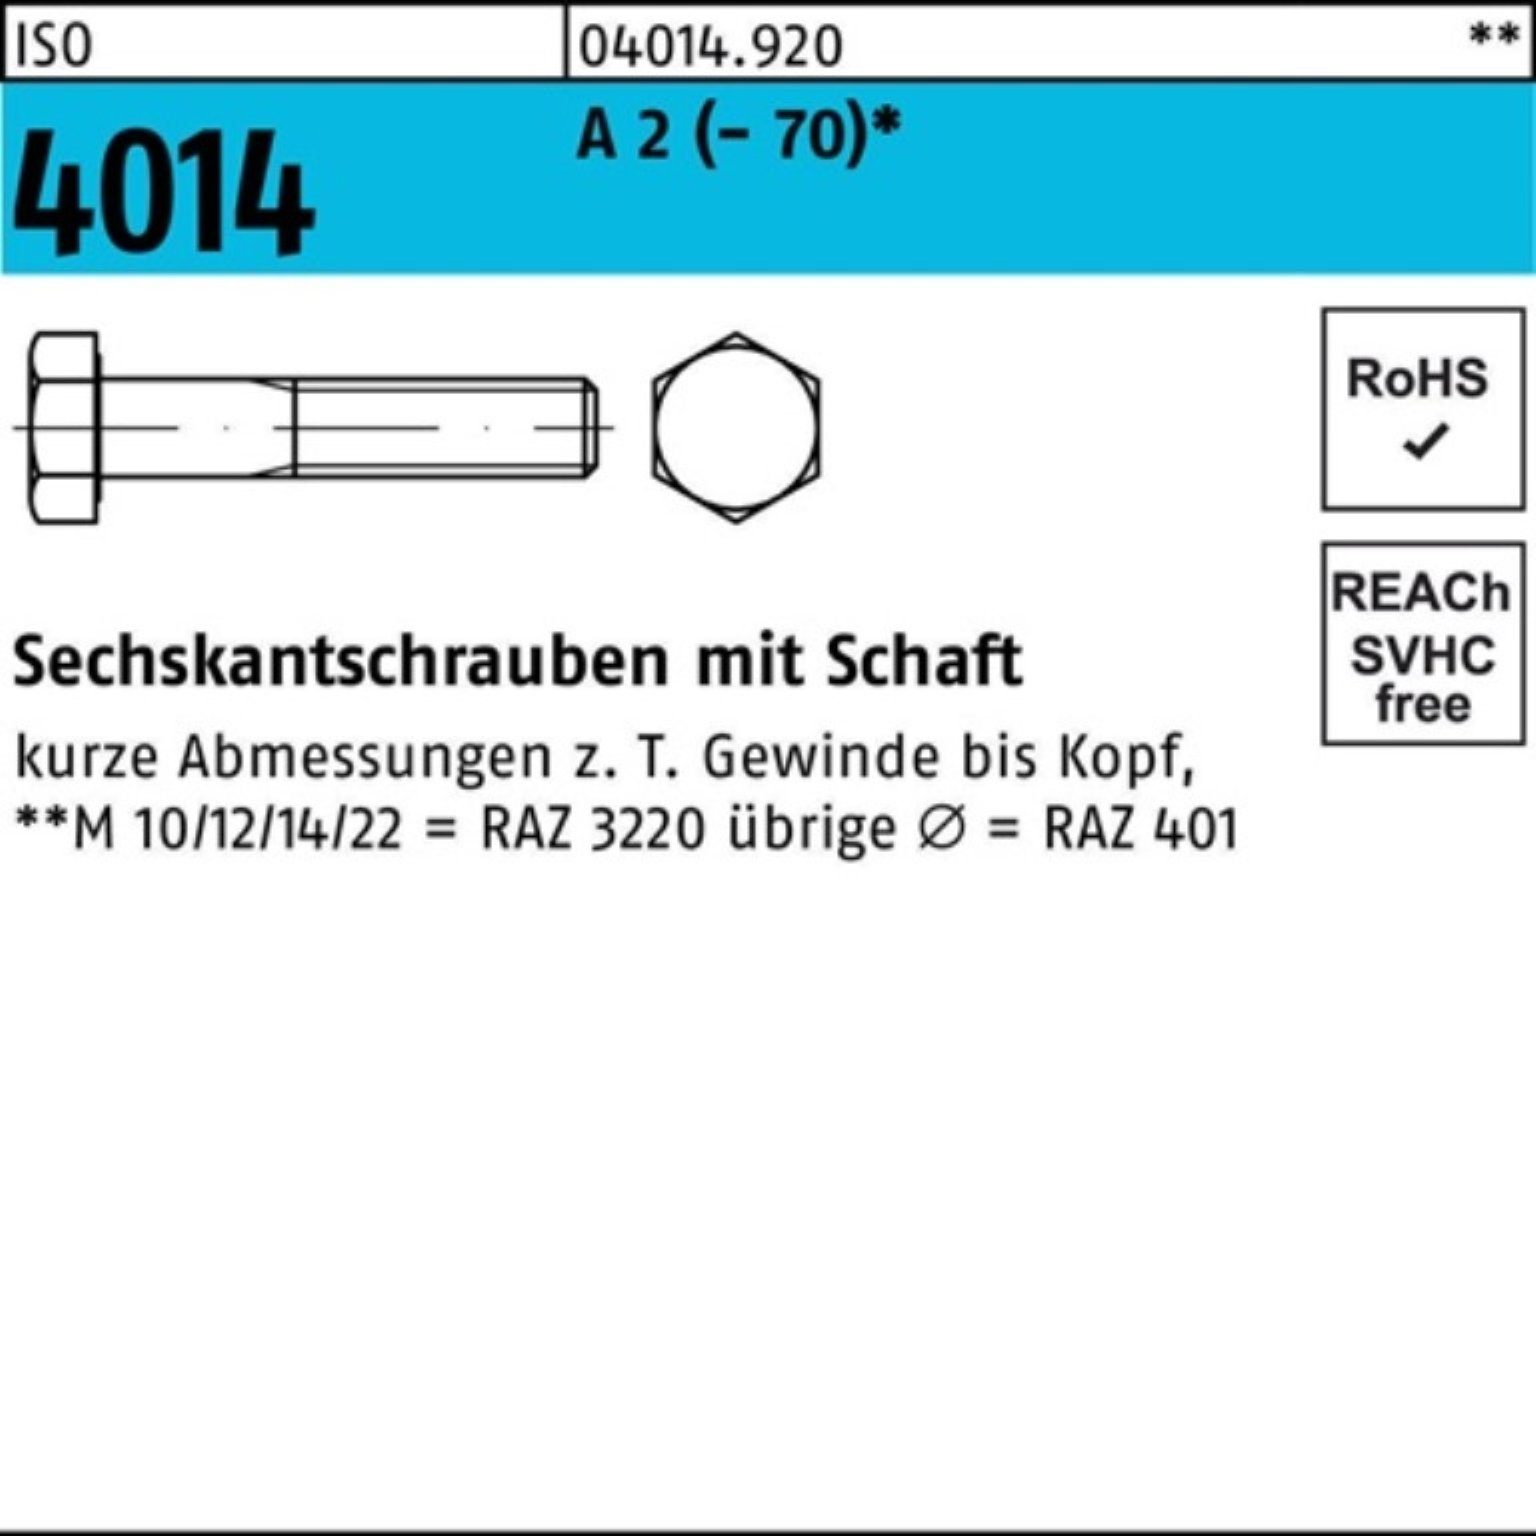 Bufab Sechskantschraube 100er Pack Sechskantschraube ISO 4014 Schaft M8x 110 A 2 (70) 50 St